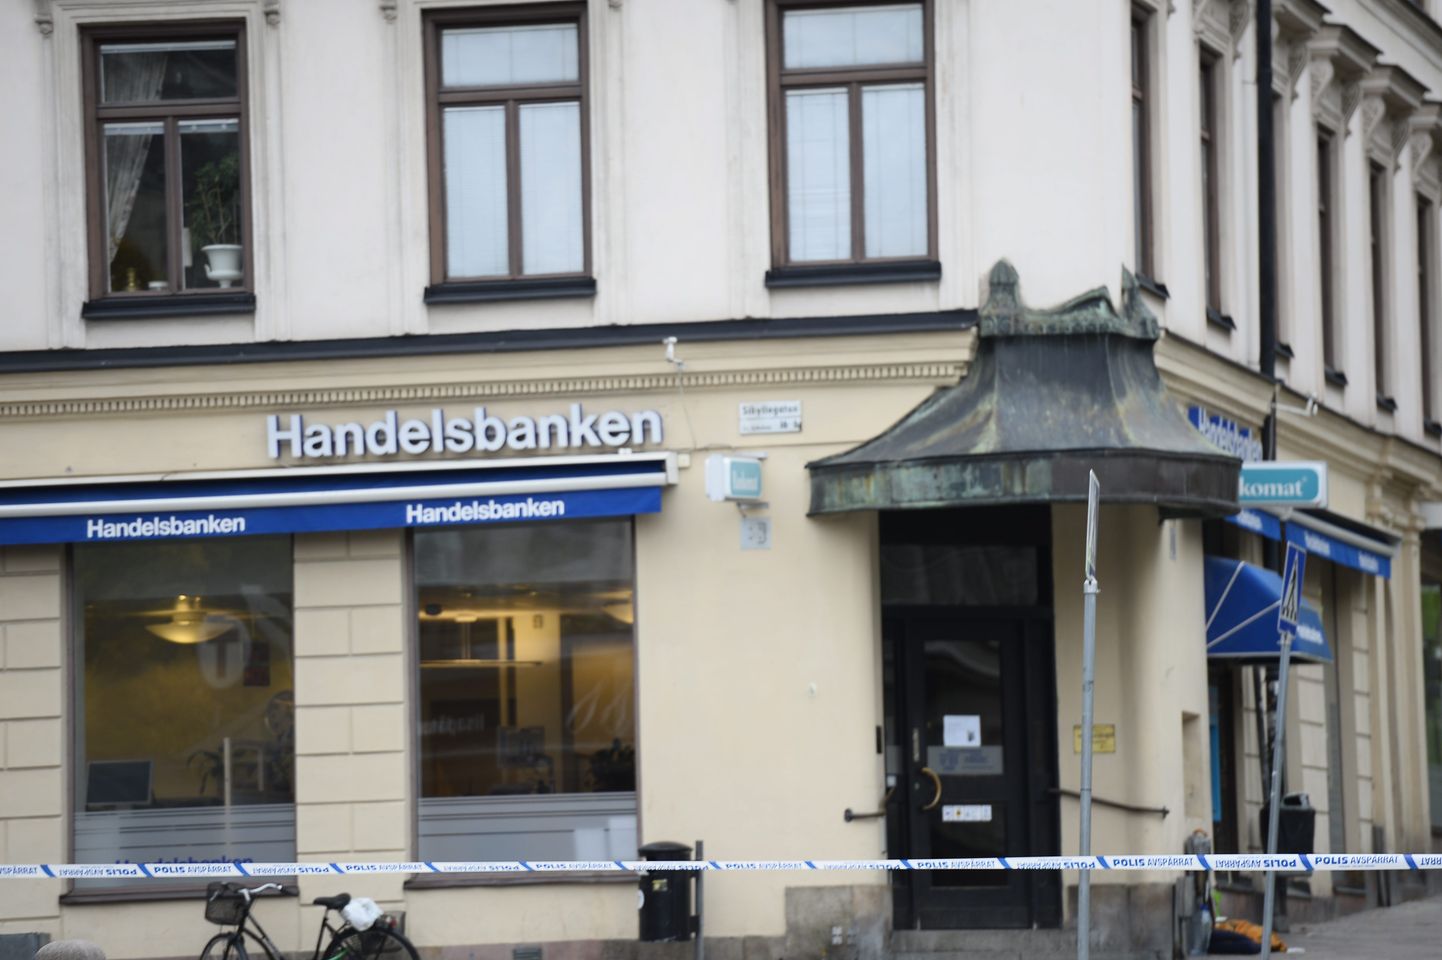 Kuigi Handelsbanken on ainuke pank Rootsis, kus sularahatehingud veel võimalikud on, võib olukord pärast 14. oktoobril Stockholmis toimunud pangaröövi muutuda.